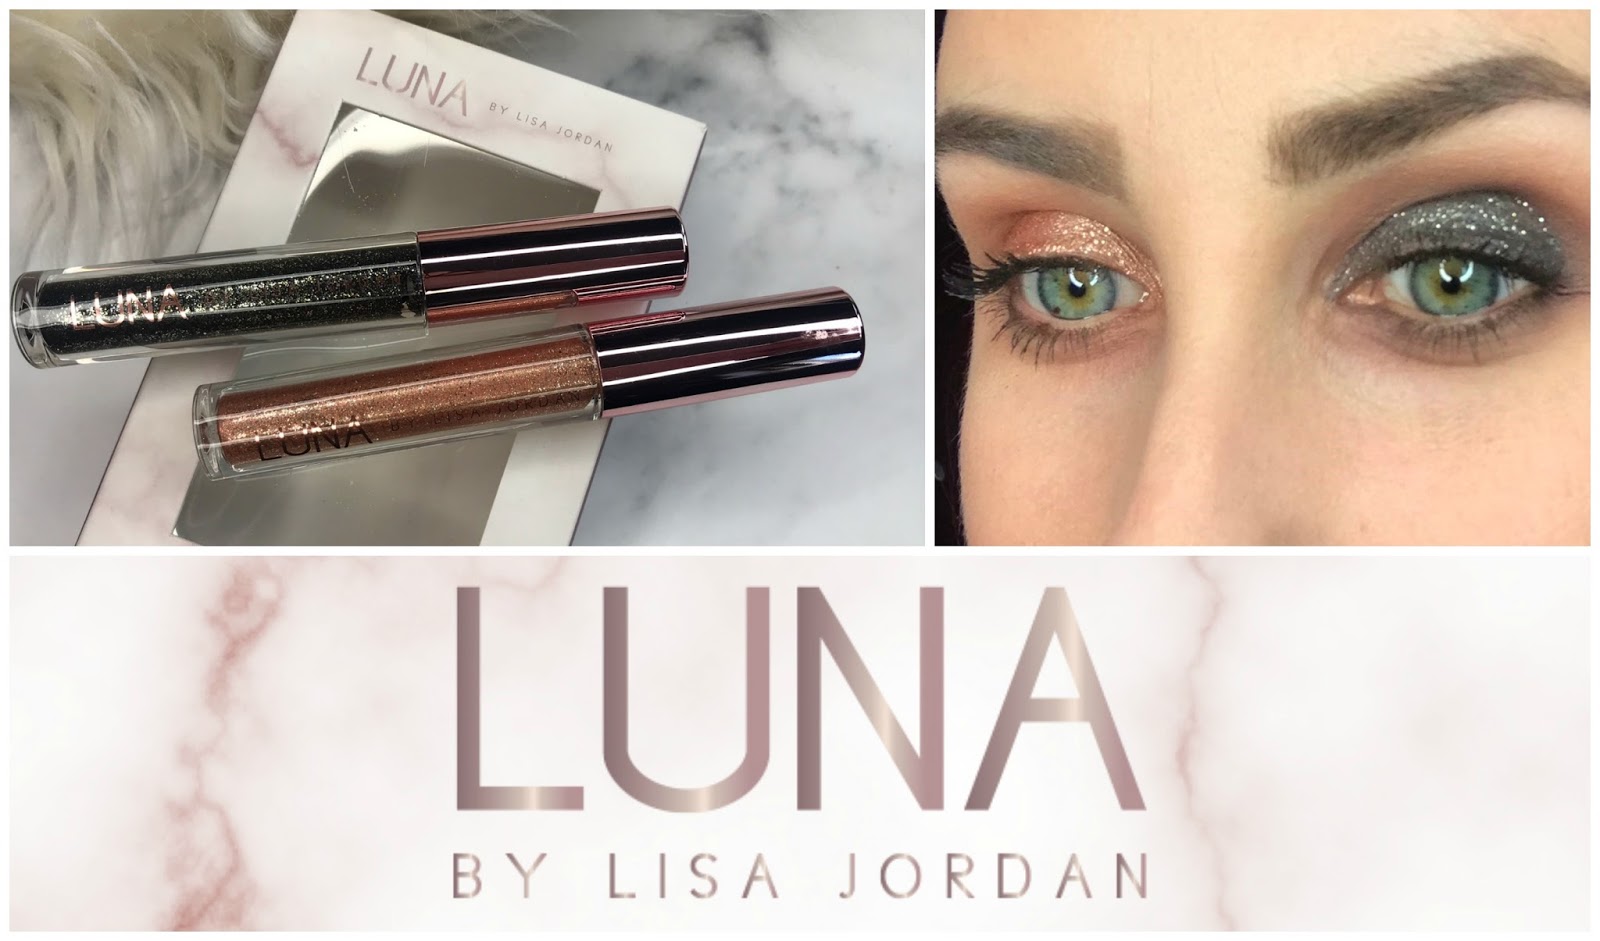 Luna by Lisa Jordan Liquid Eyeshadows - Party Edition